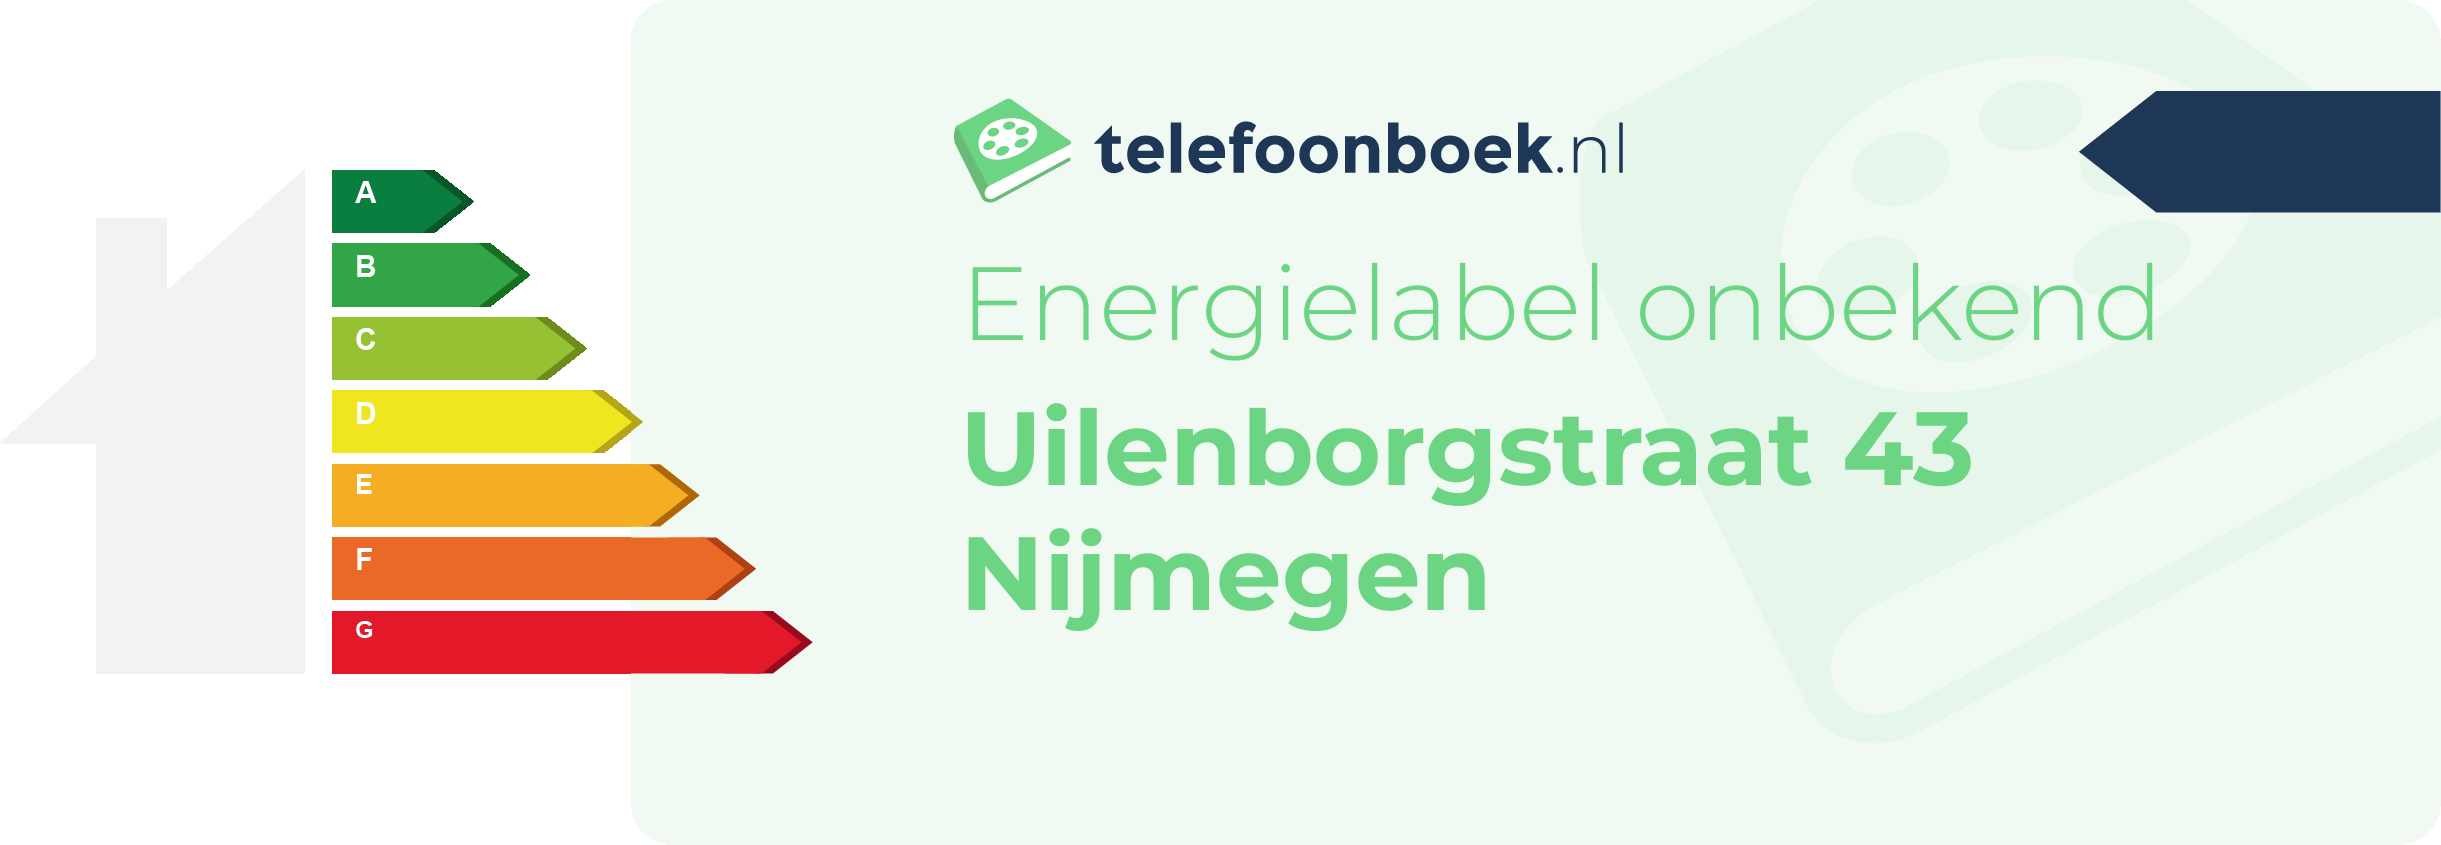 Energielabel Uilenborgstraat 43 Nijmegen